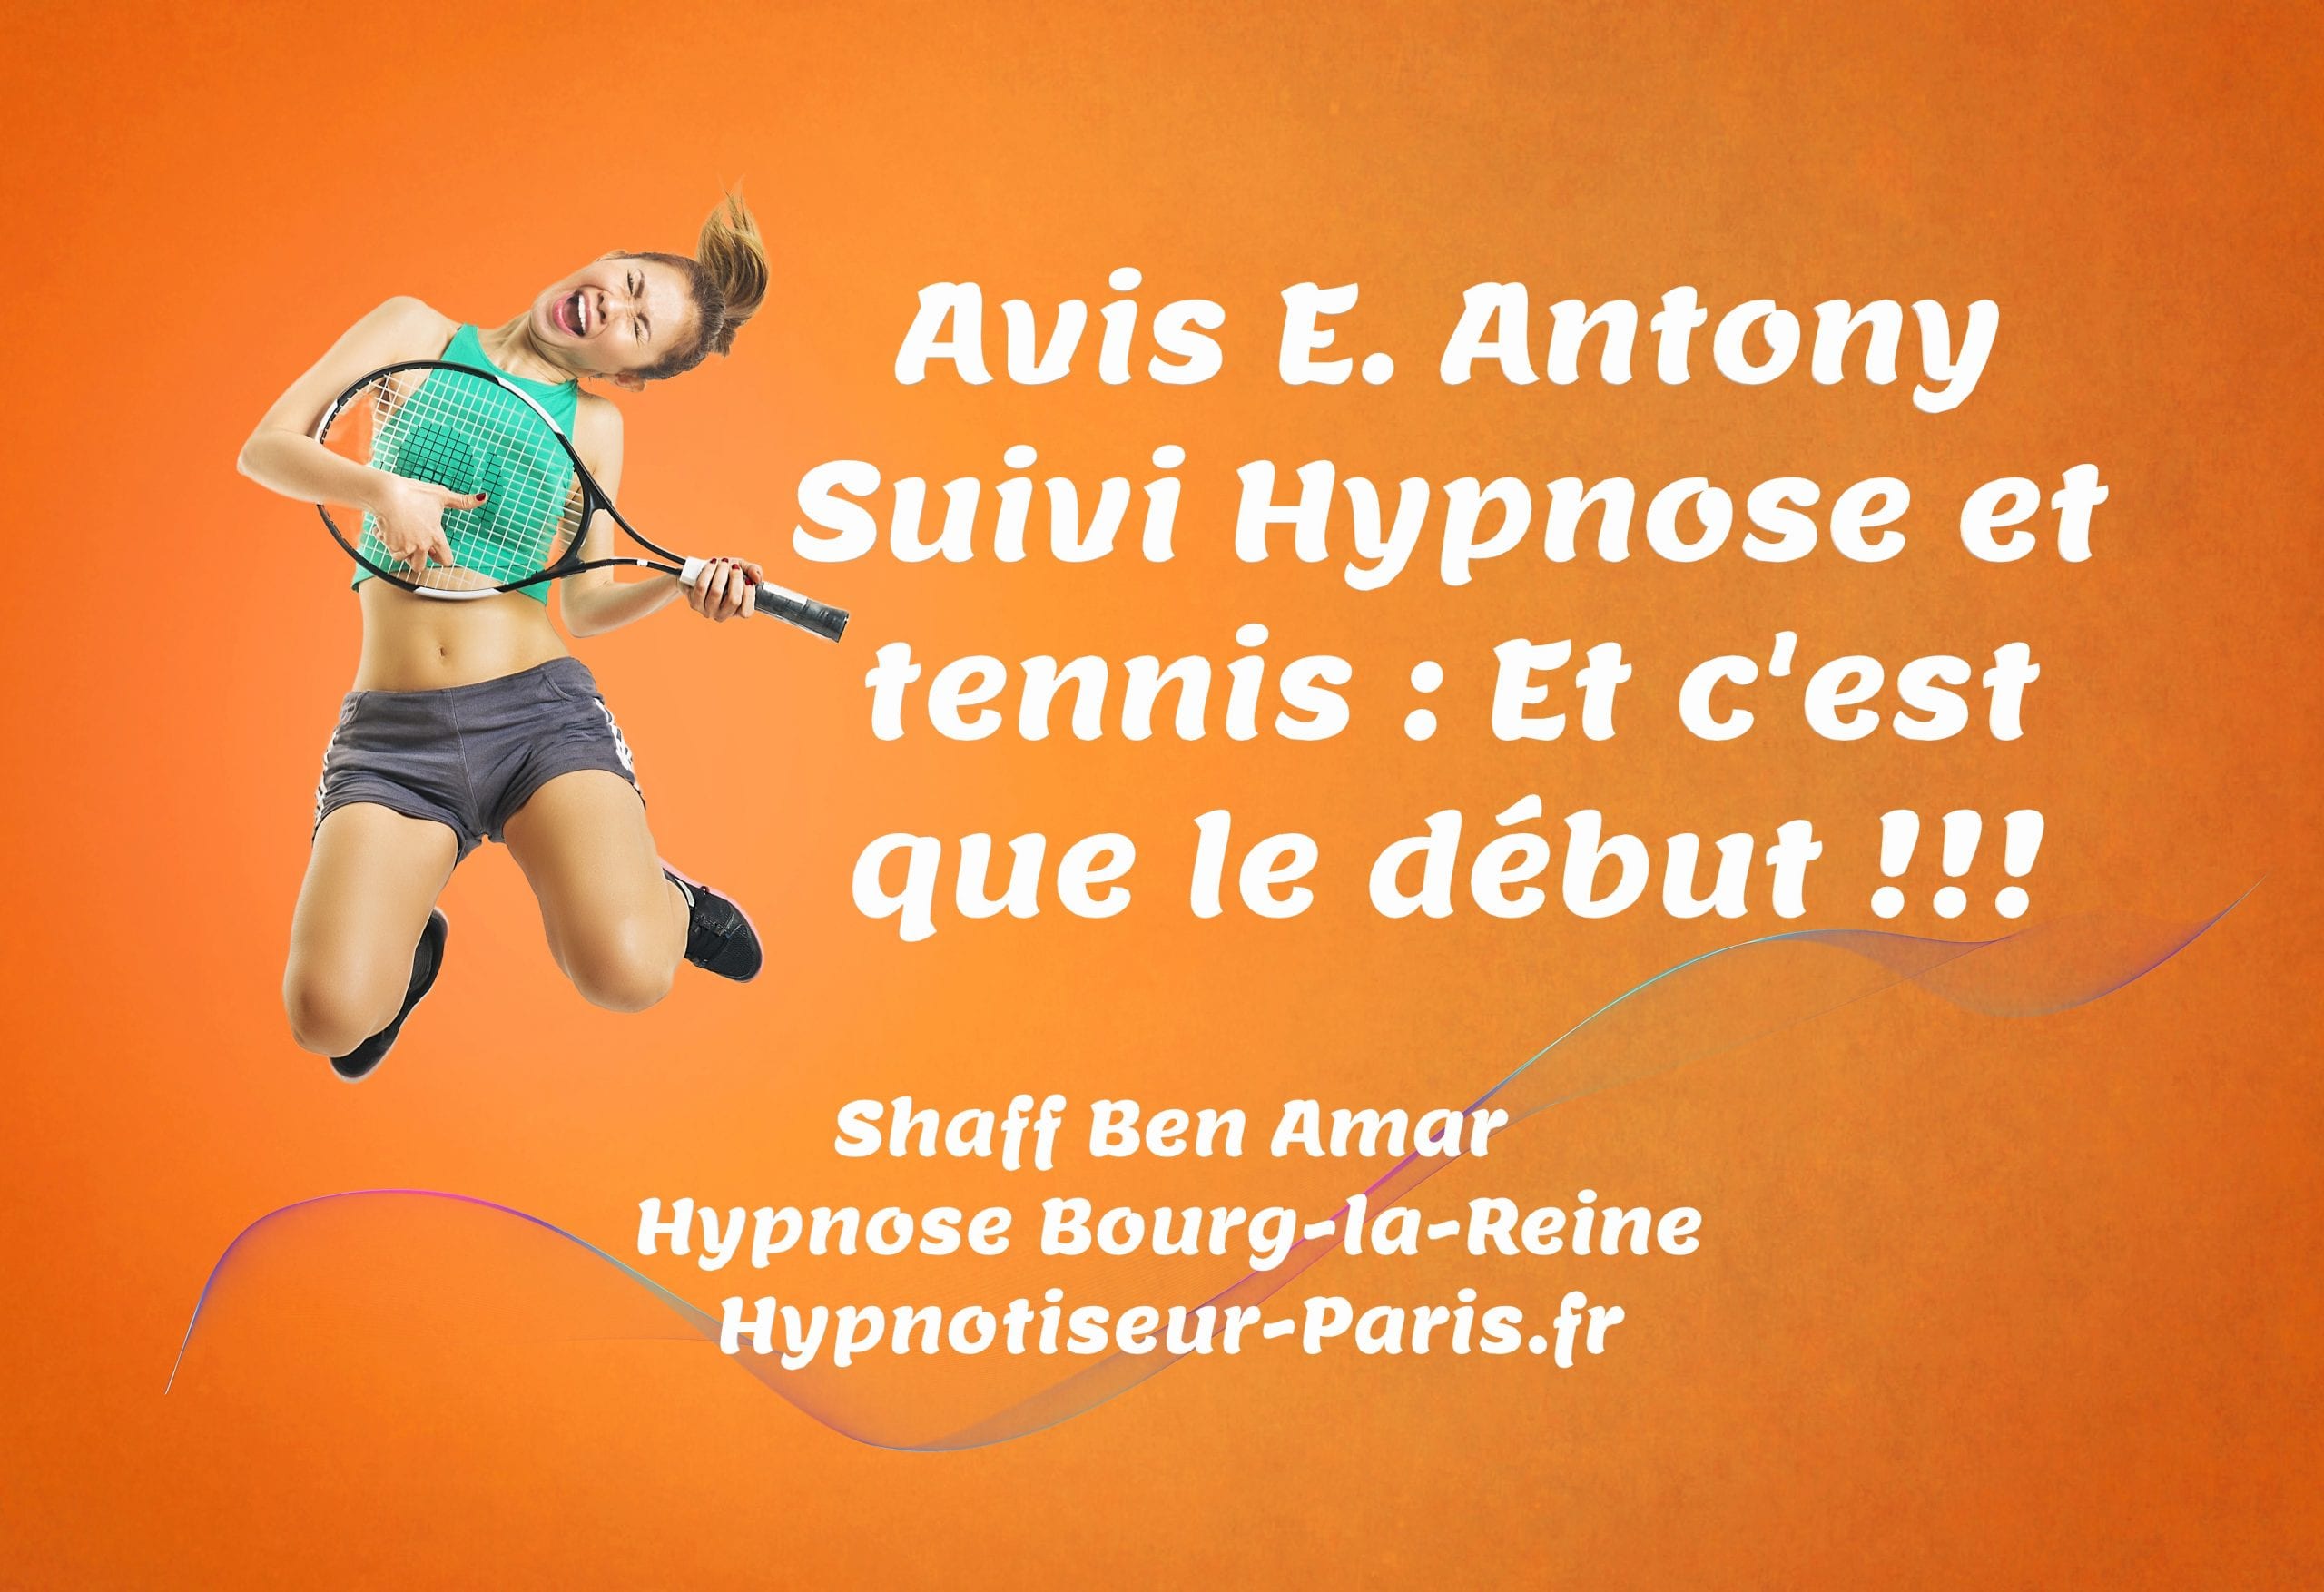 Avis E Antony Hypnose et Tennis et c'est que le debut Par Shaff Ben Amar Hypnose Bourg-La-Reine - Suivi hypnose et tennis à L’Haÿ-les-Roses (94240) , Suivi hypnose et tennis à Cachan (94230 ) , Suivi hypnose et tennis à Arcueil (94110 ), Suivi hypnose et tennis à Bagneux (92220 ) , Suivi hypnose et tennis à Sceaux (92330 ), Suivi hypnose et tennis à Fontenay-aux-Roses (92260 ), Suivi hypnose et tennis à Chevilly-Larue (94550 ) , Suivi hypnose et tennis s à Châtillon (92320 ), Suivi hypnose et tennis à Fresnes (94260 ), Suivi hypnose et tennis au Plessis-Robinson (92350 ) , Suivi hypnose et tennis à Montrouge (92120 ) , Suivi hypnose et tennis à Antony (92160 ), Suivi hypnose et tennis à Gentilly (94250 ), Suivi hypnose et tennis à Malakoff (92240 ), Suivi hypnose et tennis à Villejuif (94800 ) , Suivi hypnose et tennis à Clamart (92140 ), Suivi hypnose et tennis à Châtenay-Malabry (92290 ), Suivi hypnose et tennis à Rungis (94150 ) , Suivi hypnose et tennis au Kremlin-Bicêtre (94270), Suivi hypnose et tennis à Paris (75), Suivi hypnose et tennis en Île de France , Suivi hypnose et tennis à Paris (75000) , Suivi hypnose et tennis à Boulogne-Billancourt (92100) , Suivi hypnose et tennis à Saint-Denis (93200) , Suivi hypnose et tennis à Argenteuil (95100) , Suivi hypnose et tennis à Montreuil (93100) , Suivi hypnose et tennis à Créteil (94000) , Suivi hypnose et tennis à Nanterre (92000) , Suivi hypnose et tennis à Courbevoie (92400) , Suivi hypnose et tennis à Versailles (78000) , Suivi hypnose et tennis à Vitry-sur-Seine (94400) , Suivi hypnose et tennis à Colombes (92700) , Suivi hypnose et tennis à Asnières-sur-Seine (92600) , Suivi hypnose et tennis à Aulnay-sous-Bois (93600) , Suivi hypnose et tennis à Rueil-Malmaison (92500) , Suivi hypnose et tennis à Aubervilliers (93300) , Suivi hypnose et tennis à Champigny-sur-Marne (94500) , Suivi hypnose et tennis à Saint-Maur-des-Fossés (94100) , Suivi hypnose et tennis à Drancy (93700) , Suivi hypnose et tennis à Issy-les-Moulineaux (92130) , Suivi hypnose et tennis à Levallois-Perret (92300) , Suivi hypnose et tennis à Noisy-le-Grand (93160) , Suivi hypnose et tennis à Antony (92160) , Suivi hypnose et tennis à Neuilly-sur-Seine (92200) , Suivi hypnose et tennis à Clichy (92110) , Suivi hypnose et tennis à Sarcelles (95200) , Suivi hypnose et tennis à Ivry-sur-Seine (94200) , Suivi hypnose et tennis à Cergy (95000) , Suivi hypnose et tennis à Villejuif (94800) , Suivi hypnose et tennis à Épinay-sur-Seine (93800) , Suivi hypnose et tennis à Pantin (93500) , Suivi hypnose et tennis à Bondy (93140) , Suivi hypnose et tennis à Fontenay-sous-Bois (94120) , Suivi hypnose et tennis à Maisons-Alfort (94700) , Suivi hypnose et tennis à Chelles (77500) , Suivi hypnose et tennis à Clamart (92140) , Suivi hypnose et tennis à Évry (91000) , Suivi hypnose et tennis à Le Blanc-Mesnil (93150) , Suivi hypnose et tennis à Sartrouville (78500) , Suivi hypnose et tennis à Meaux (77100) , Suivi hypnose et tennis à Sevran (93270) , Suivi hypnose et tennis à Montrouge (92120) , Suivi hypnose et tennis à Vincennes (94300) , Suivi hypnose et tennis à Bobigny (93000) , Suivi hypnose et tennis à Saint-Ouen (93400) , Suivi hypnose et tennis à Suresnes (92150) , Suivi hypnose et tennis à Meudon (92190) , Suivi hypnose et tennis à Puteaux (92800) , Suivi hypnose et tennis à Alfortville (94140) , Suivi hypnose et tennis à Corbeil-Essonnes (91100) , Suivi hypnose et tennis à Mantes-la-Jolie (78200) , Suivi hypnose et tennis à Massy (91300) , Suivi hypnose et tennis à Livry-Gargan (93190) , Suivi hypnose et tennis à Gennevilliers (92230) , Suivi hypnose et tennis à Rosny-sous-Bois (93110) , Suivi hypnose et tennis à Choisy-le-Roi (94600) , Suivi hypnose et tennis à Saint-Germain-en-Laye (78100) , Suivi hypnose et tennis à Garges-lès-Gonesse (95140) , Suivi hypnose et tennis à Noisy-le-Sec (93130) , Suivi hypnose et tennis à Melun (77000) , Suivi hypnose et tennis à Gagny (93220) , Suivi hypnose et tennis à Bagneux (92220) , Suivi hypnose et tennis à La Courneuve (93120) , Suivi hypnose et tennis à Poissy (78300) , Suivi hypnose et tennis à Savigny-sur-Orge (91600) , Suivi hypnose et tennis à Villepinte (93420) , Suivi hypnose et tennis à Pontault-Combault (77340) , Suivi hypnose et tennis à Conflans-Sainte-Honorine (78700) , Suivi hypnose et tennis à Tremblay-en-France (93290) , Suivi hypnose et tennis à Sainte-Geneviève-des-Bois (91700) , Suivi hypnose et tennis à Bagnolet (93170) , Suivi hypnose et tennis à Stains (93240) , Suivi hypnose et tennis à Neuilly-sur-Marne (93330) , Suivi hypnose et tennis à Montigny-le-Bretonneux (78180) , Suivi hypnose et tennis à Franconville (95130) , Suivi hypnose et tennis à Châtillon (92320) , Suivi hypnose et tennis au Perreux-sur-Marne (94170), Suivi hypnose et tennis à Villeneuve-Saint-Georges (94190) , Suivi hypnose et tennis à Châtenay-Malabry (92290) , Suivi hypnose et tennis à Viry-Châtillon (91170) , Suivi hypnose et tennis à Nogent-sur-Marne (94130) , Suivi hypnose et tennis à Houilles (78800) , Suivi hypnose et tennis à Goussainville (95190) , Suivi hypnose et tennis à Malakoff (92240) , Suivi hypnose et tennis à Plaisir (78370) , Suivi hypnose et tennis au Mureaux (78130) , Suivi hypnose et tennis à Athis-Mons (91200) , Suivi hypnose et tennis à Palaiseau (91120) , Suivi hypnose et tennis à L’Haÿ-les-Roses (94240) , Suivi hypnose et tennis à Chatou (78400) , Suivi hypnose et tennis à Saint-Cloud (92210) , Suivi hypnose et tennis à Clichy-sous-Bois (93390) , Suivi hypnose et tennis à Thiais (94320) , Suivi hypnose et tennis à Pontoise (95000) , Suivi hypnose et tennis à Trappes (78190) , Suivi hypnose et tennis à Charenton-le-Pont (94220) , Suivi hypnose et tennis à Bois-Colombes (92270) , Suivi hypnose et tennis à Yerres (91330) , Suivi hypnose et tennis à Le Chesnay (78150) , Suivi hypnose et tennis à Savigny-le-Temple (77176) , Suivi hypnose et tennis à Draveil (91210) , Suivi hypnose et tennis à Cachan (94230) , Suivi hypnose et tennis à Villemomble (93250) , Suivi hypnose et tennis à Bezons (95870) , Suivi hypnose et tennis à Guyancourt (78280) , Suivi hypnose et tennis à Pierrefitte-sur-Seine (93380) , Suivi hypnose et tennis au Plessis-Robinson (92350) , Suivi hypnose et tennis à La Garenne-Colombes (92250) , Suivi hypnose et tennis à Ris-Orangis (91130) , Suivi hypnose et tennis à Ermont (95120) , Suivi hypnose et tennis à Villiers-sur-Marne (94350) , Suivi hypnose et tennis à Vigneux-sur-Seine (91270) , Suivi hypnose et tennis à Vanves (92170) , Suivi hypnose et tennis à Élancourt (78990) , Suivi hypnose et tennis à Villiers-le-Bel (95400) , Suivi hypnose et tennis à Grigny (91350) , Suivi hypnose et tennis à Gonesse (95500) , Suivi hypnose et tennis à Fresnes (94260) , Suivi hypnose et tennis à Rambouillet (78120) , Suivi hypnose et tennis à Taverny (95150) , Suivi hypnose et tennis à Sannois (95110) , Suivi hypnose et tennis au Kremlin-Bicêtre (94270) , Suivi hypnose et tennis à Herblay (95220) , Suivi hypnose et tennis à Sucy-en-Brie (94370) , Suivi hypnose et tennis à Romainville (93230) , Suivi hypnose et tennis à Brunoy (91800) , Suivi hypnose et tennis à Montfermeil (93370) , Suivi hypnose et tennis à Villeneuve-la-Garenne (92390) , Suivi hypnose et tennis au Ulis (91940) , Suivi hypnose et tennis à Champs-sur-Marne (77420) , Suivi hypnose et tennis à Villeparisis (77270) , Suivi hypnose et tennis à Eaubonne (95600) , Suivi hypnose et tennis à Saint-Ouen-l’Aumône (95310) , Suivi hypnose et tennis à Fontenay-aux-Roses (92260) , Suivi hypnose et tennis à Bussy-Saint-Georges (77600) , Suivi hypnose et tennis à Brétigny-sur-Orge (91220) , Suivi hypnose et tennis à Étampes (91150) , Suivi hypnose et tennis à Cormeilles-en-Parisis (95240) , Suivi hypnose et tennis à Sèvres (92310) , Suivi hypnose et tennis à Montgeron (91230) , Suivi hypnose et tennis à Maisons-Laffitte (78600) , Suivi hypnose et tennis à Torcy (77200) , Suivi hypnose et tennis à Saint-Mandé (94160) , Suivi hypnose et tennis à Roissy-en-Brie (77680) , Suivi hypnose et tennis aux Lilas (93260) , Suivi hypnose et tennis aux Pavillons-sous-Bois (93320) , Suivi hypnose et tennis à Combs-la-Ville (77380) , Suivi hypnose et tennis à Deuil-la-Barre (95170) , Suivi hypnose et tennis à Orly (94310) , Suivi hypnose et tennis à Longjumeau (91160) , Suivi hypnose et tennis à Montmorency (95160)